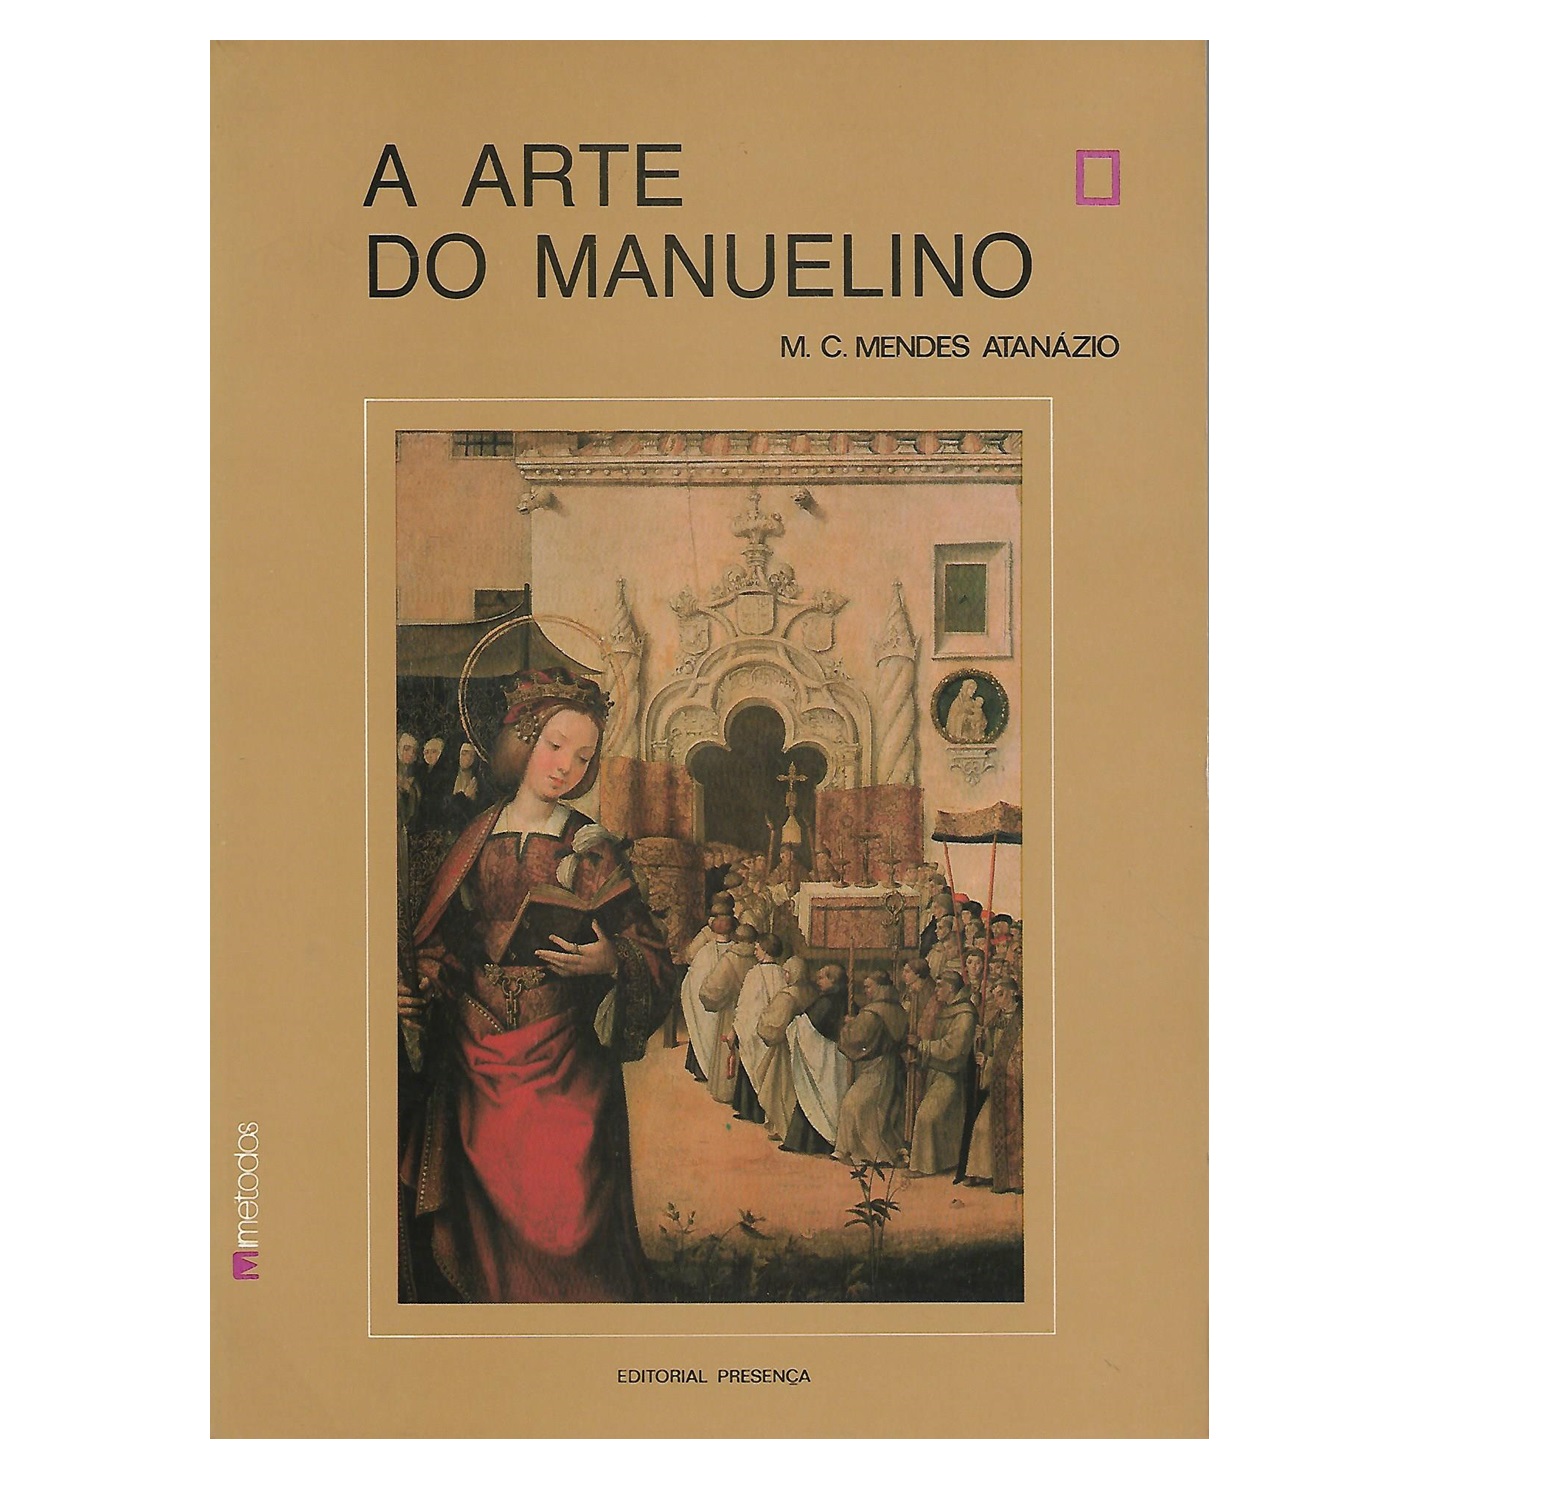 A ARTE DO MANUELINO: MECENAS, INFLUÊNCIAS, ESPAÇO